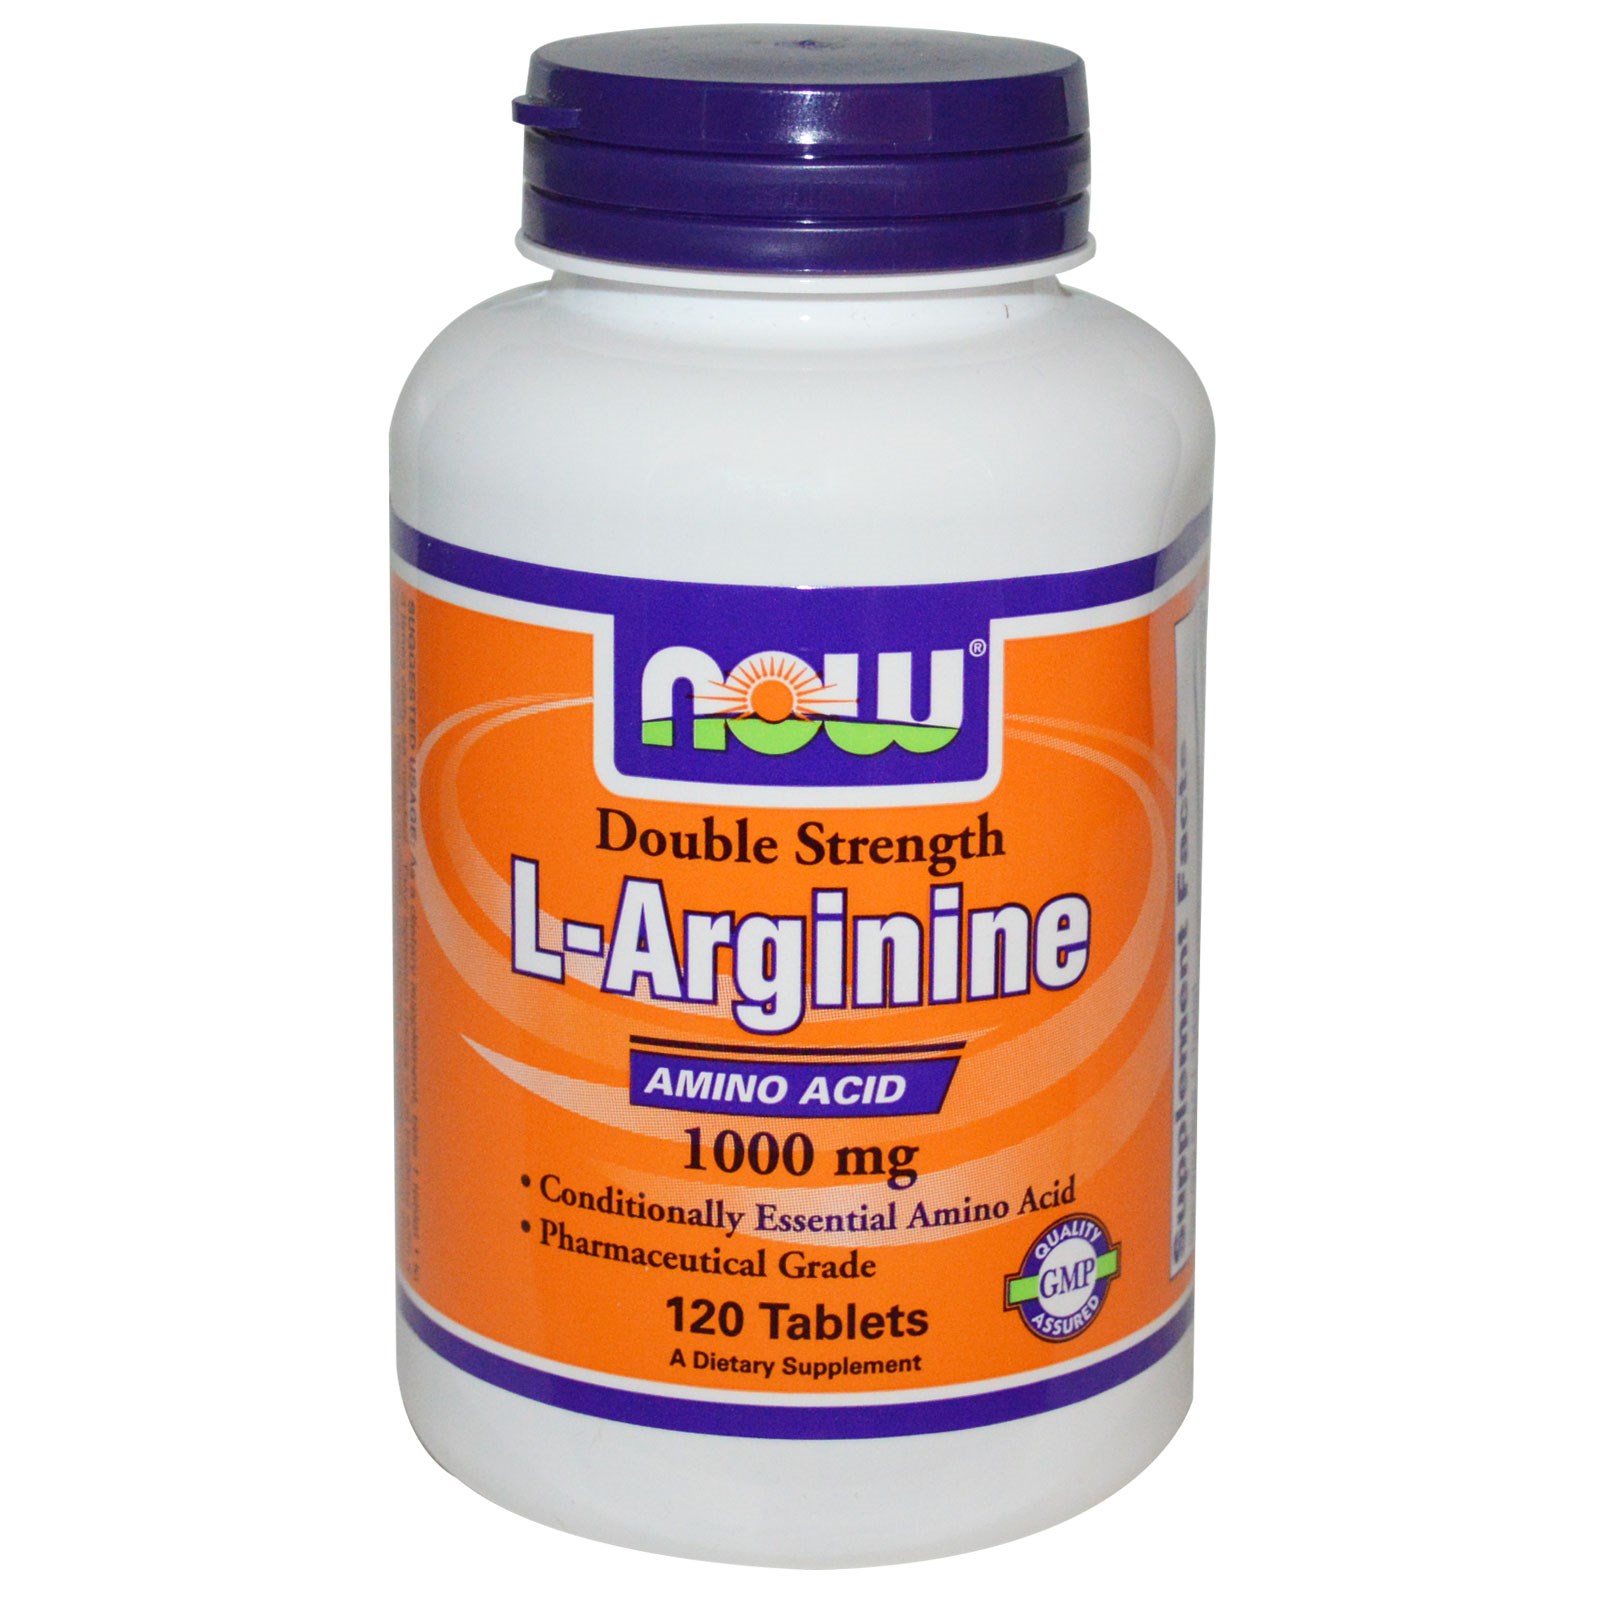 ال ارجينين مكمل غذائي Larginine لتعويض الجسم بالاحماض الامينية الهامة